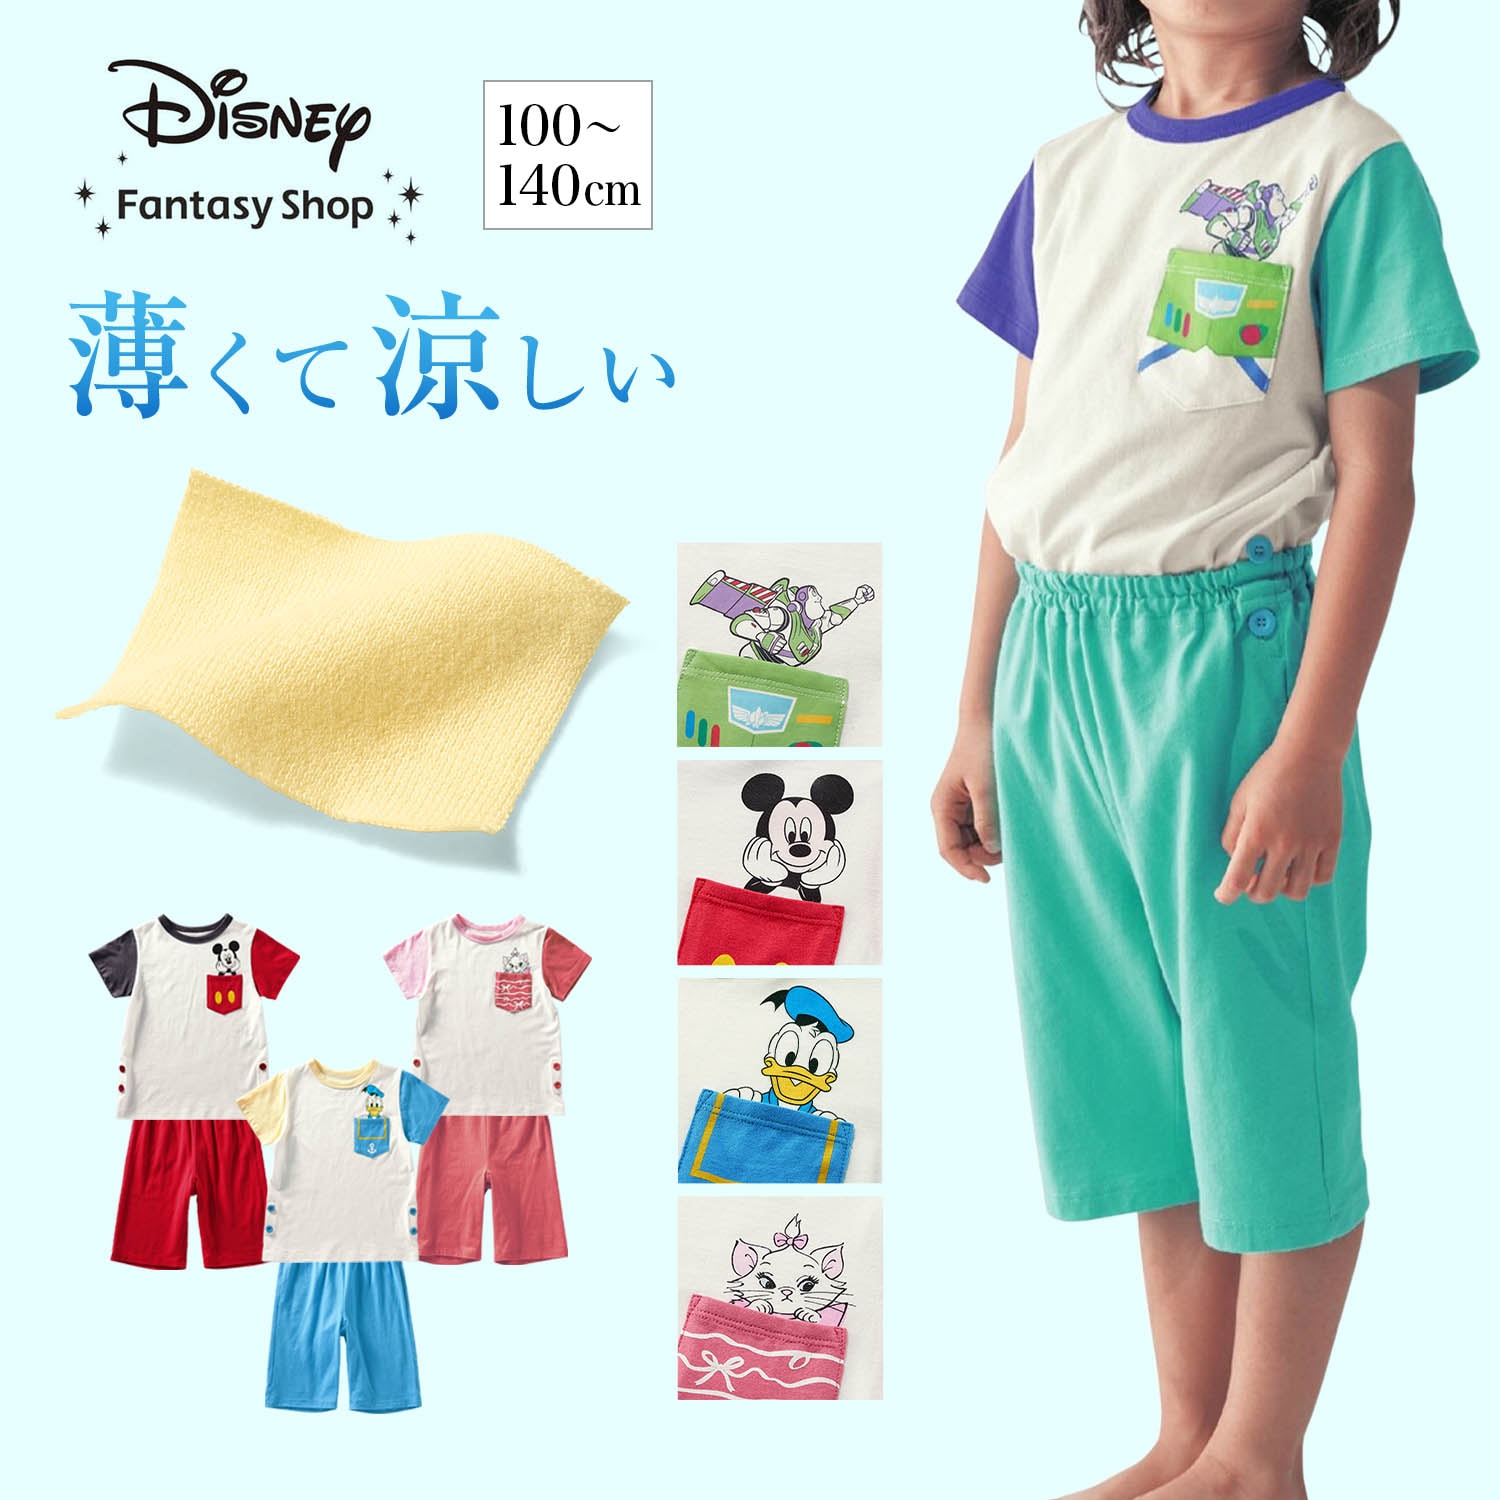 【ディズニー/Disney】薄くて涼しいキャラクターモチーフパジャマ(選べるキャラクター)